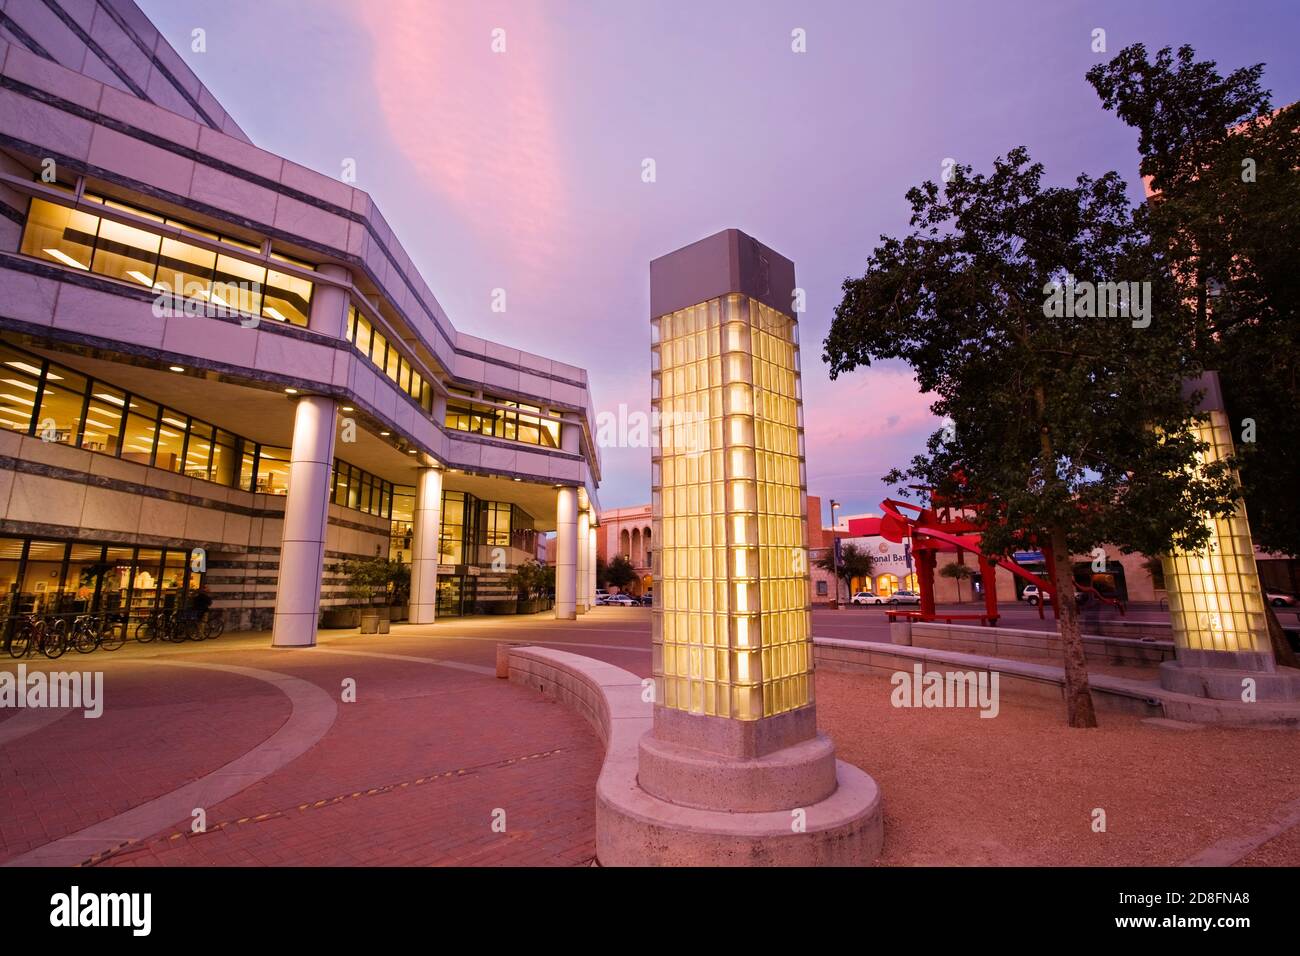 Public Library, Downtown Tucson, Arizona, USA Stock Photo